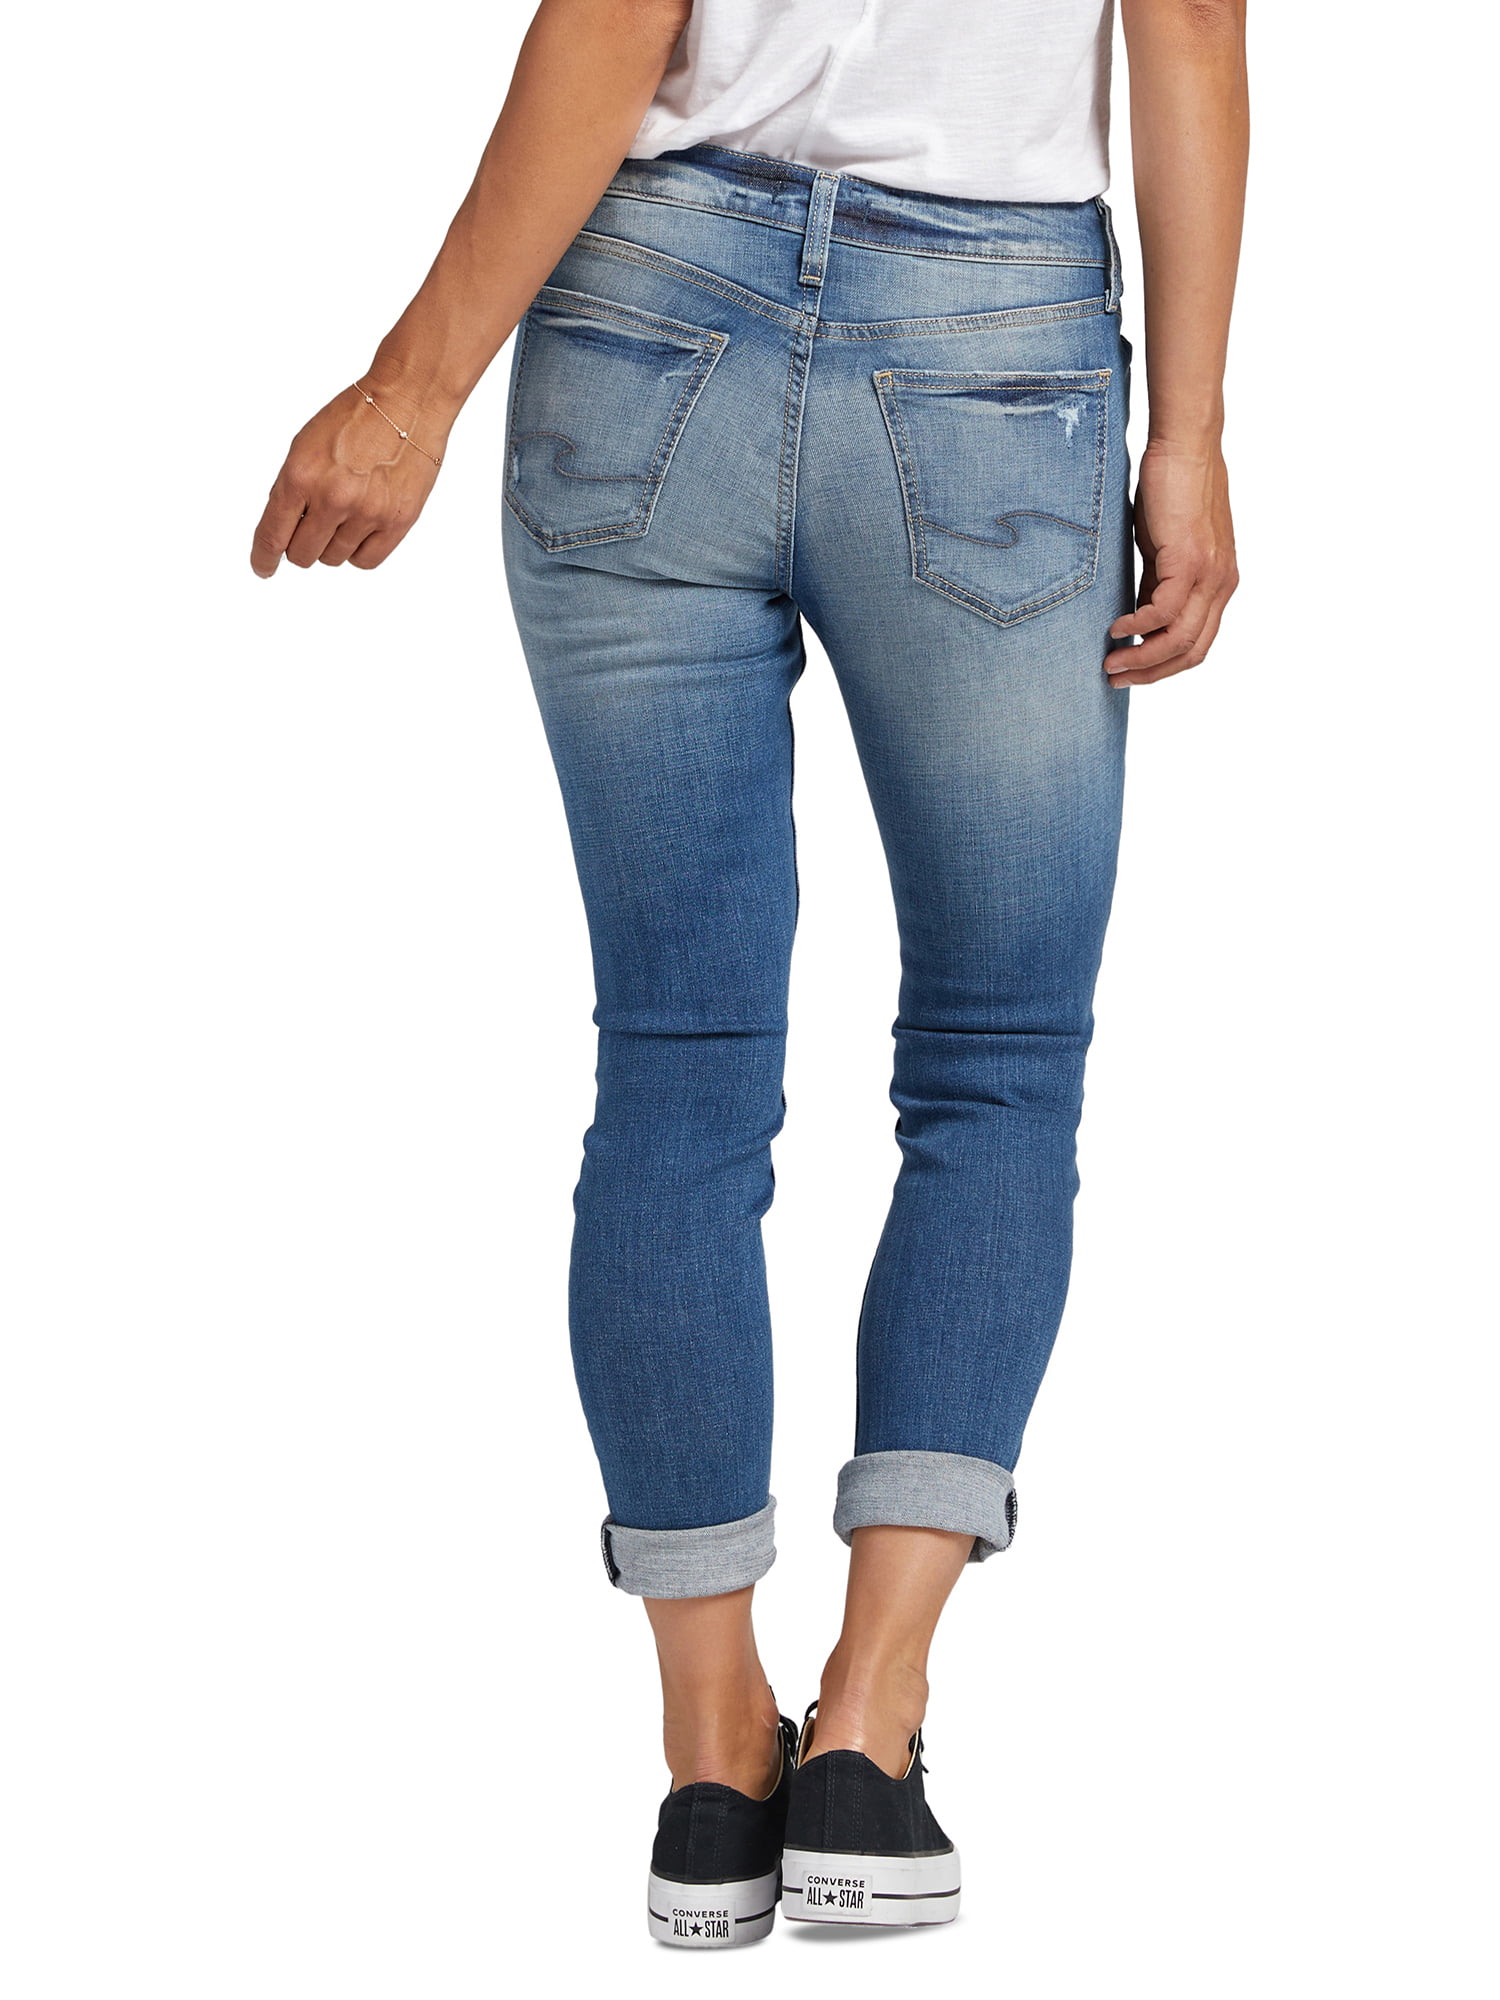 Camii Mia Womens Fleece Lined Jeans Winter Warm Slim Fit Jeggings 33x29